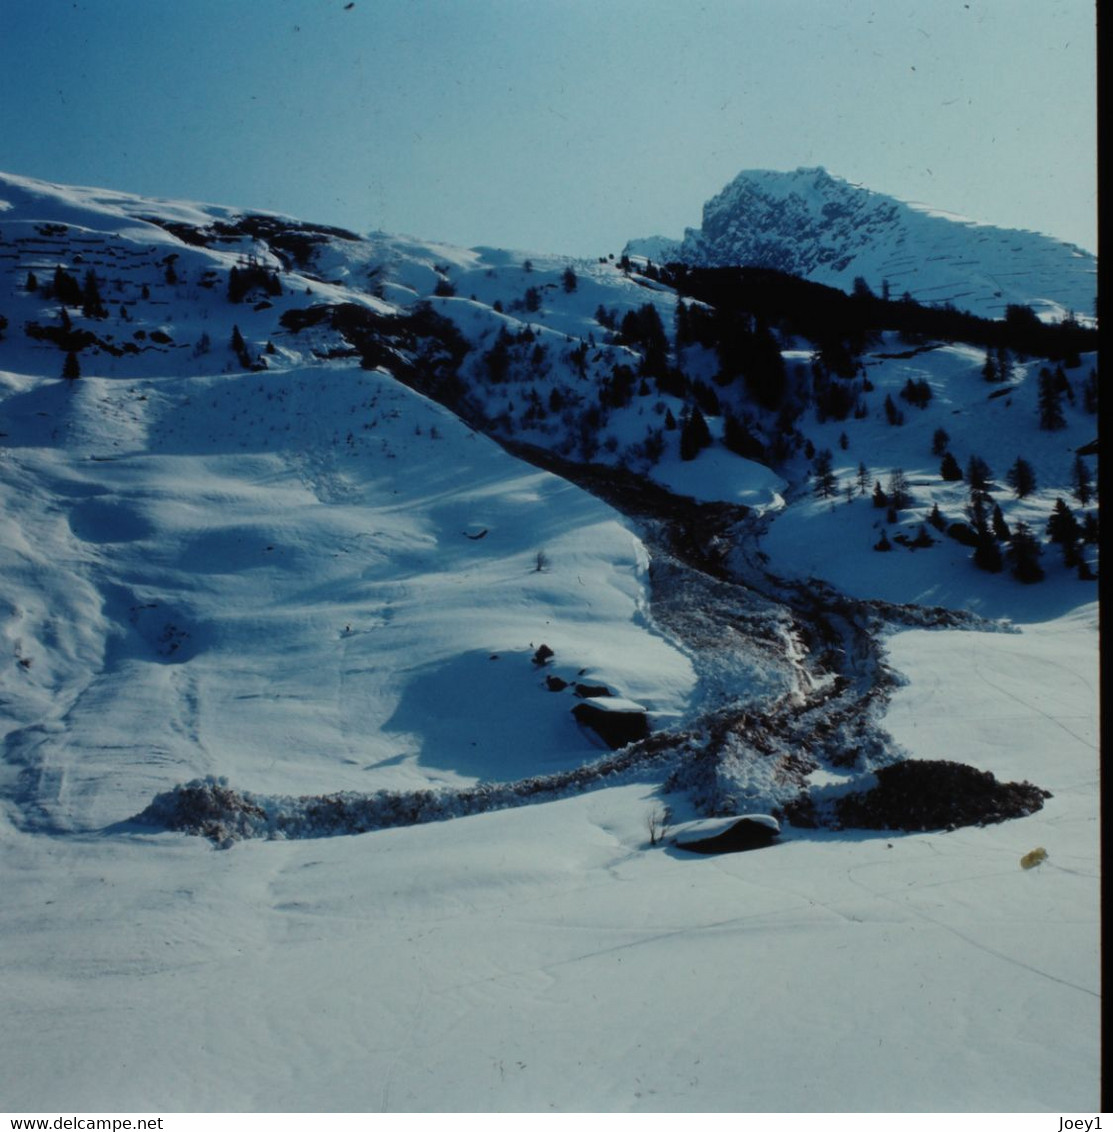 Photos André Roch Alpiniste Spécialiste Des Avalanches,18 Ekta Originaux 6/6,Davos Et Autres 1968,1970 - Diapositives